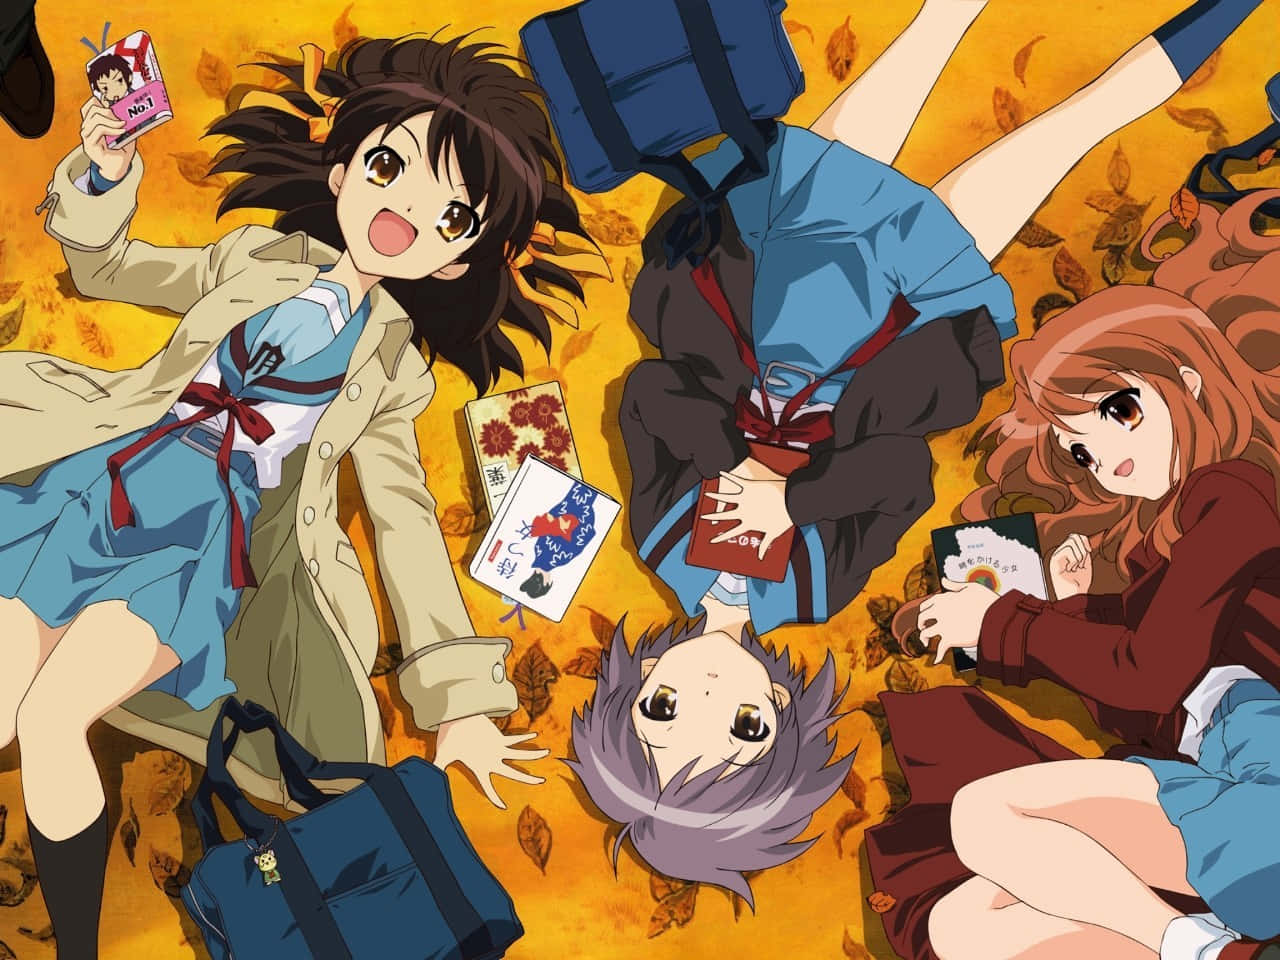 Haruhi,mikuru Y Yuki Tumbadas En Un Fondo De Pantalla De Anime De Otoño. Fondo de pantalla